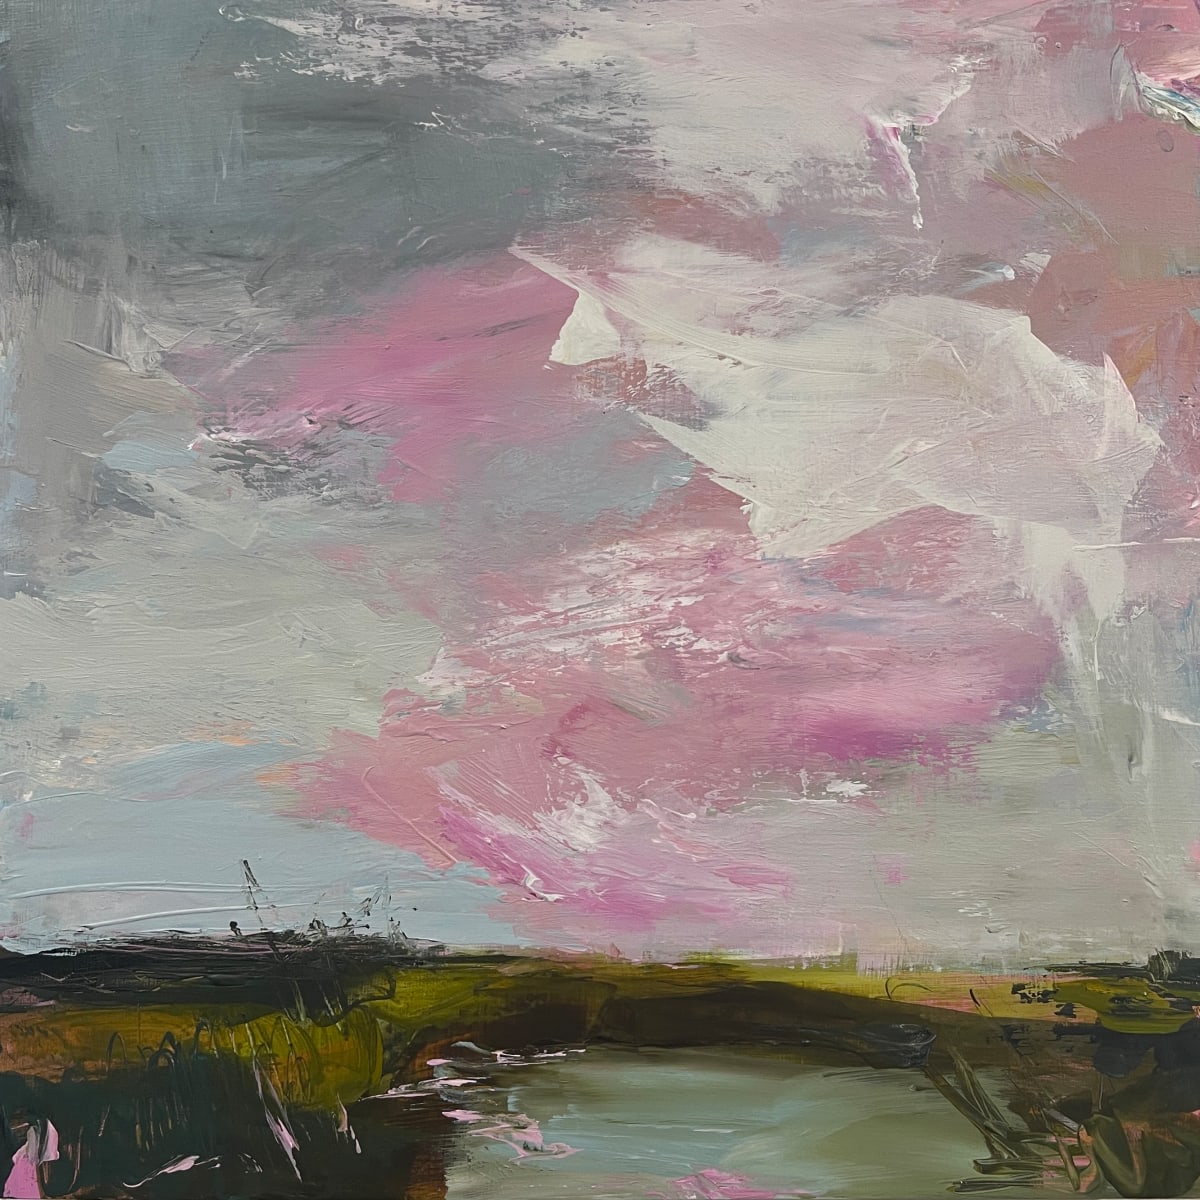 Abstract Landscape in Pink II #3025 by Kelly Dillard 